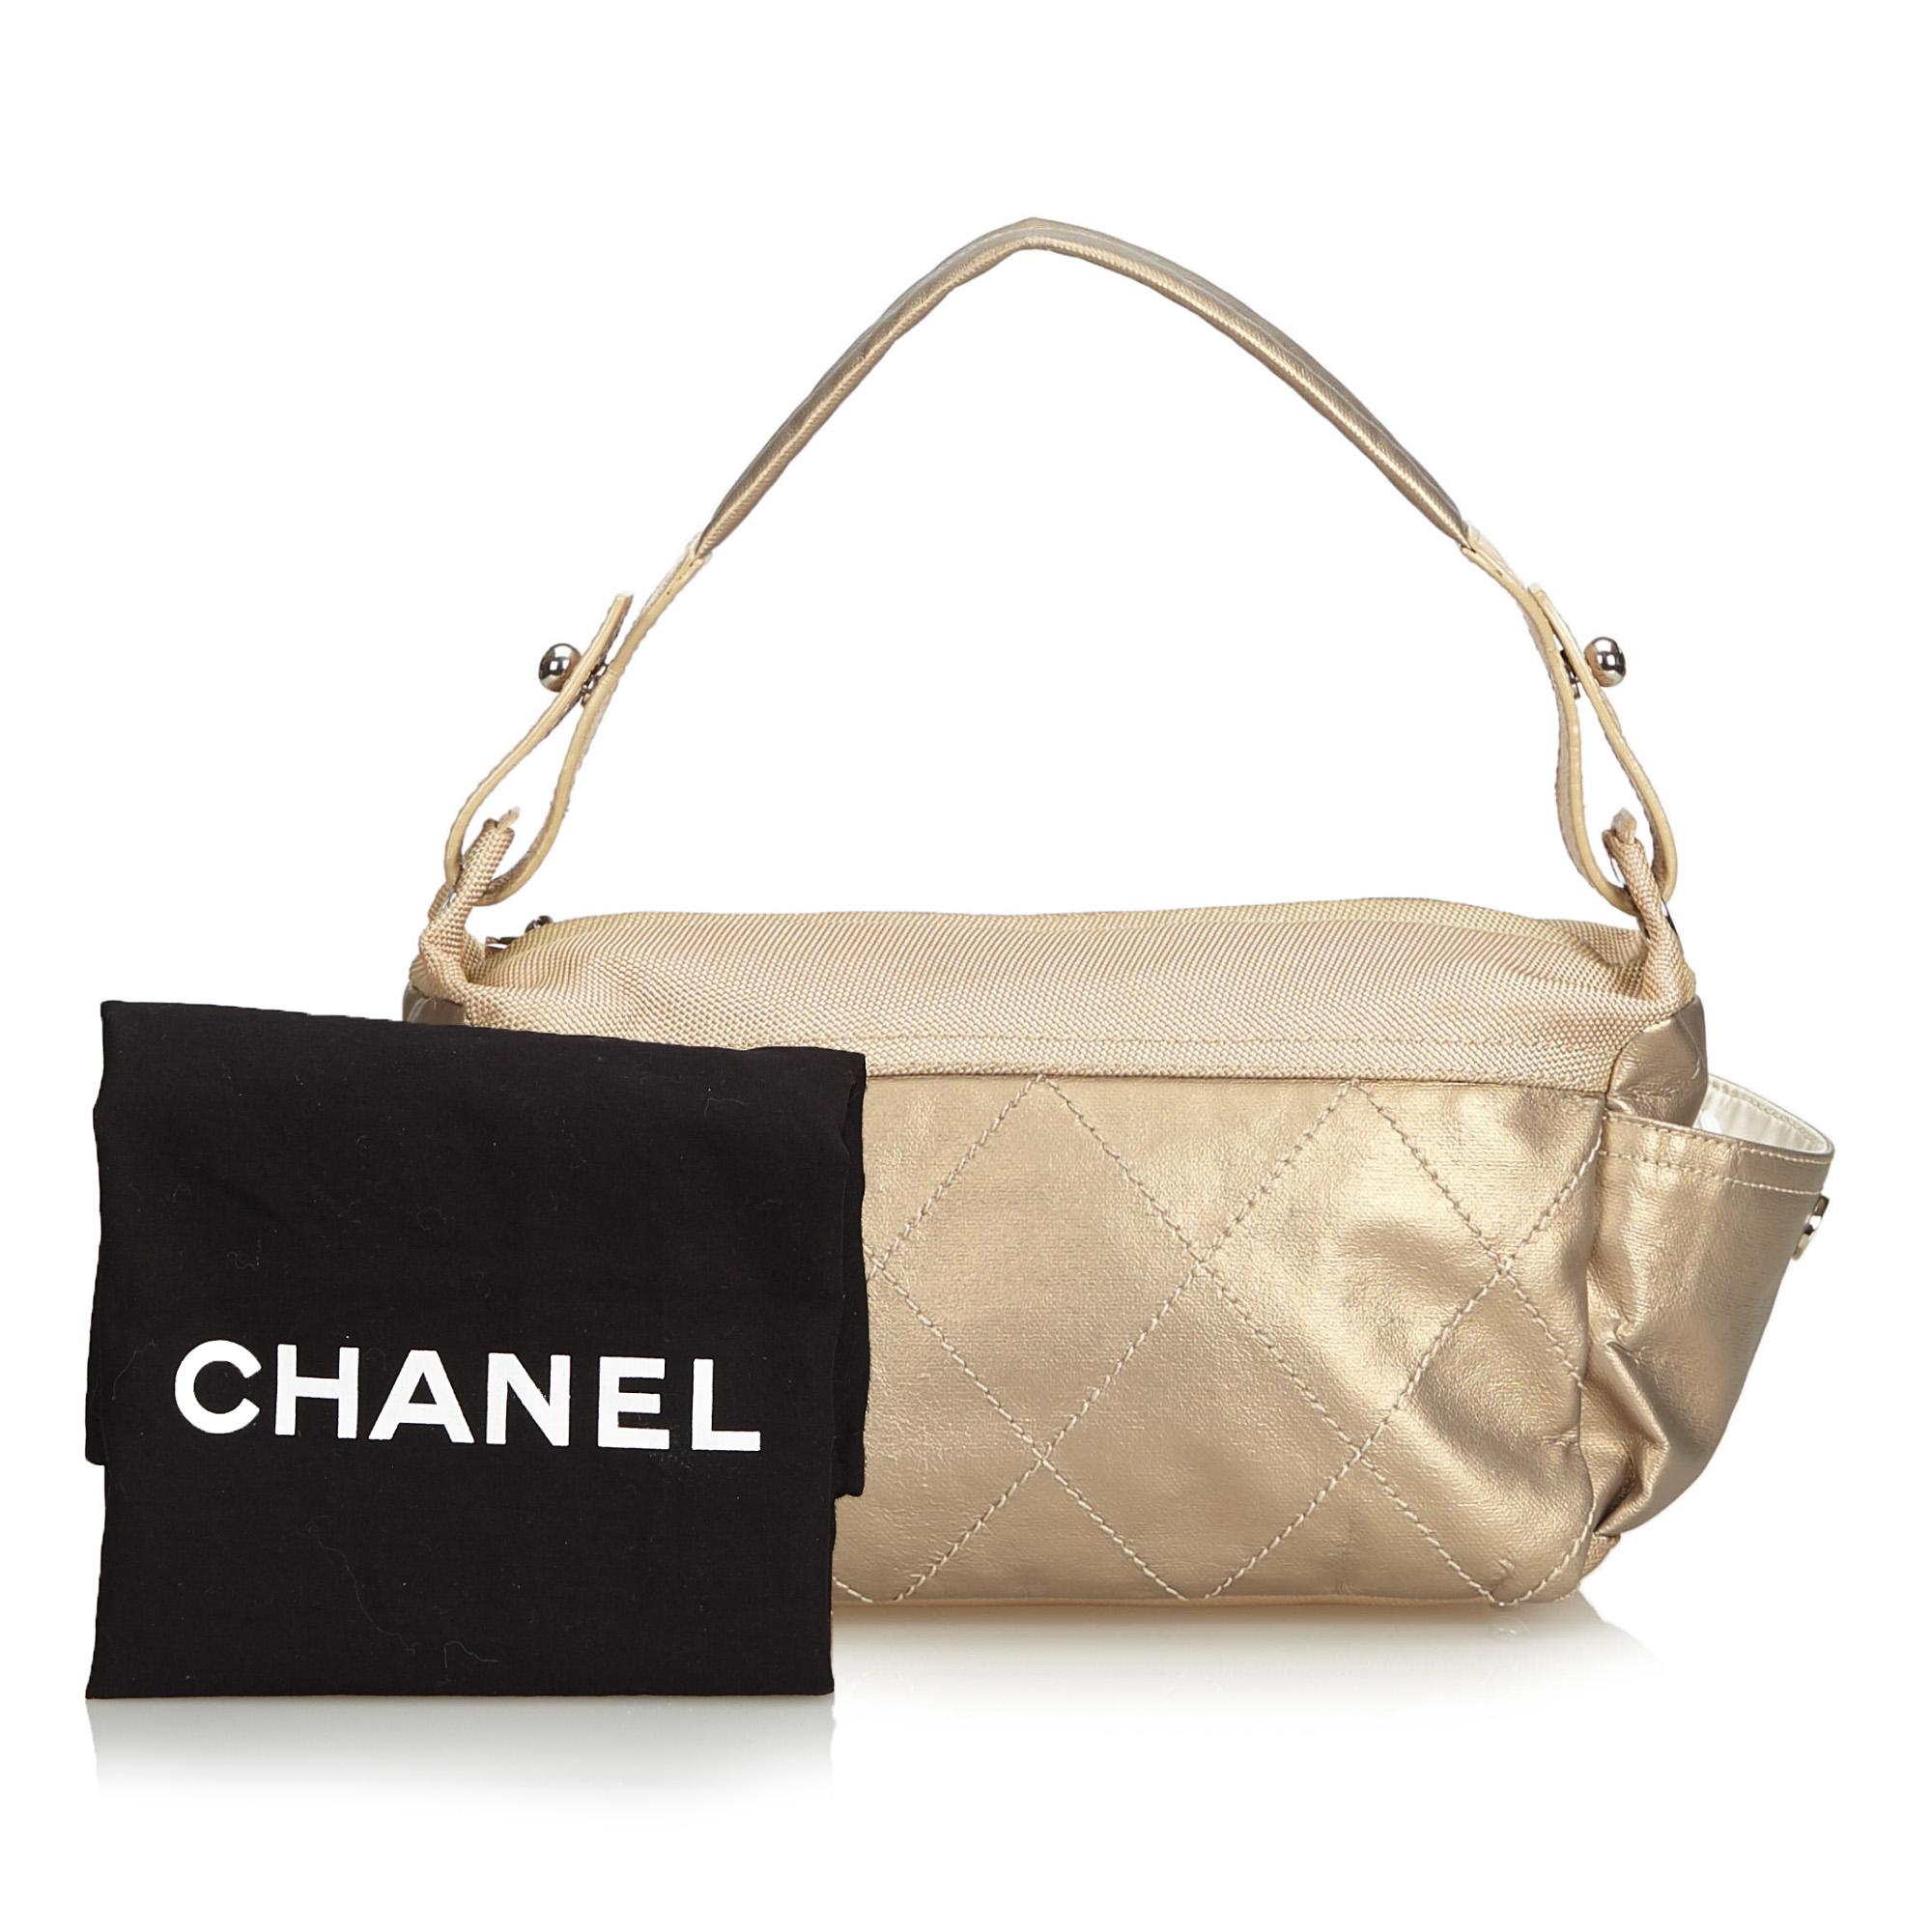 Chanel Gold Paris Biarritz Bag For Sale 5